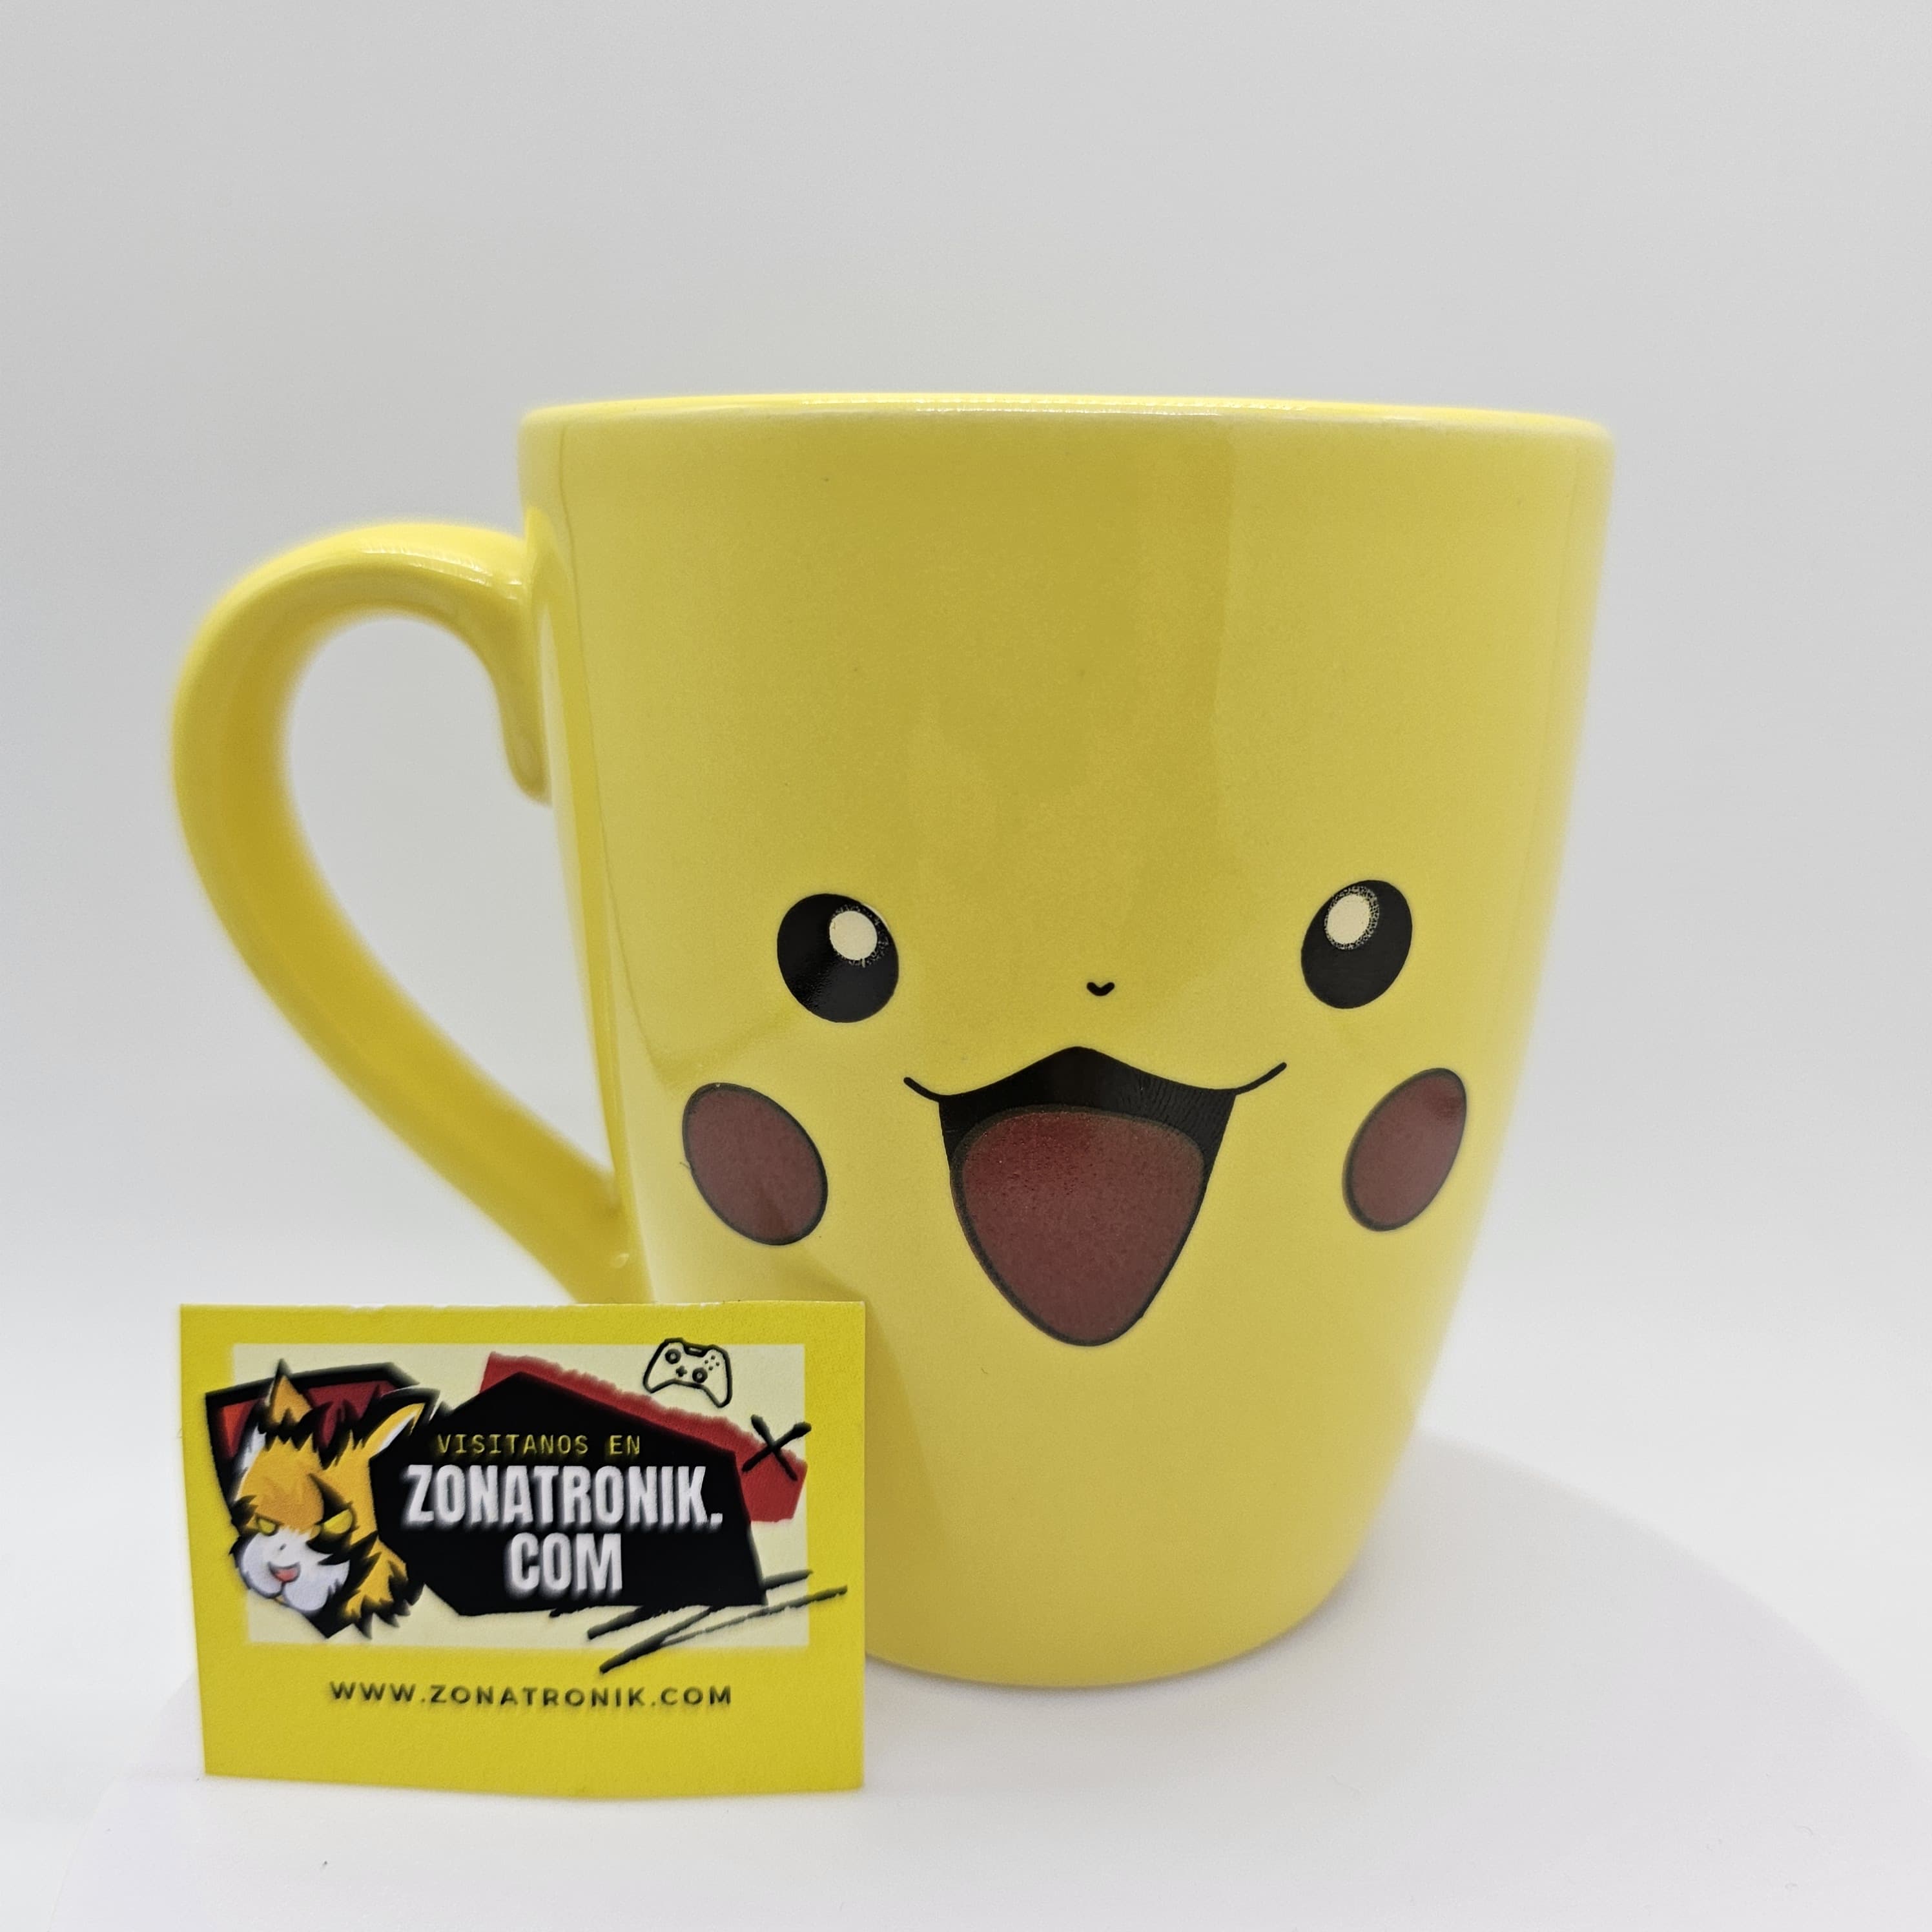 Taza Pokémon Pikachu Globo 380 ml - Vajilla - Los mejores precios